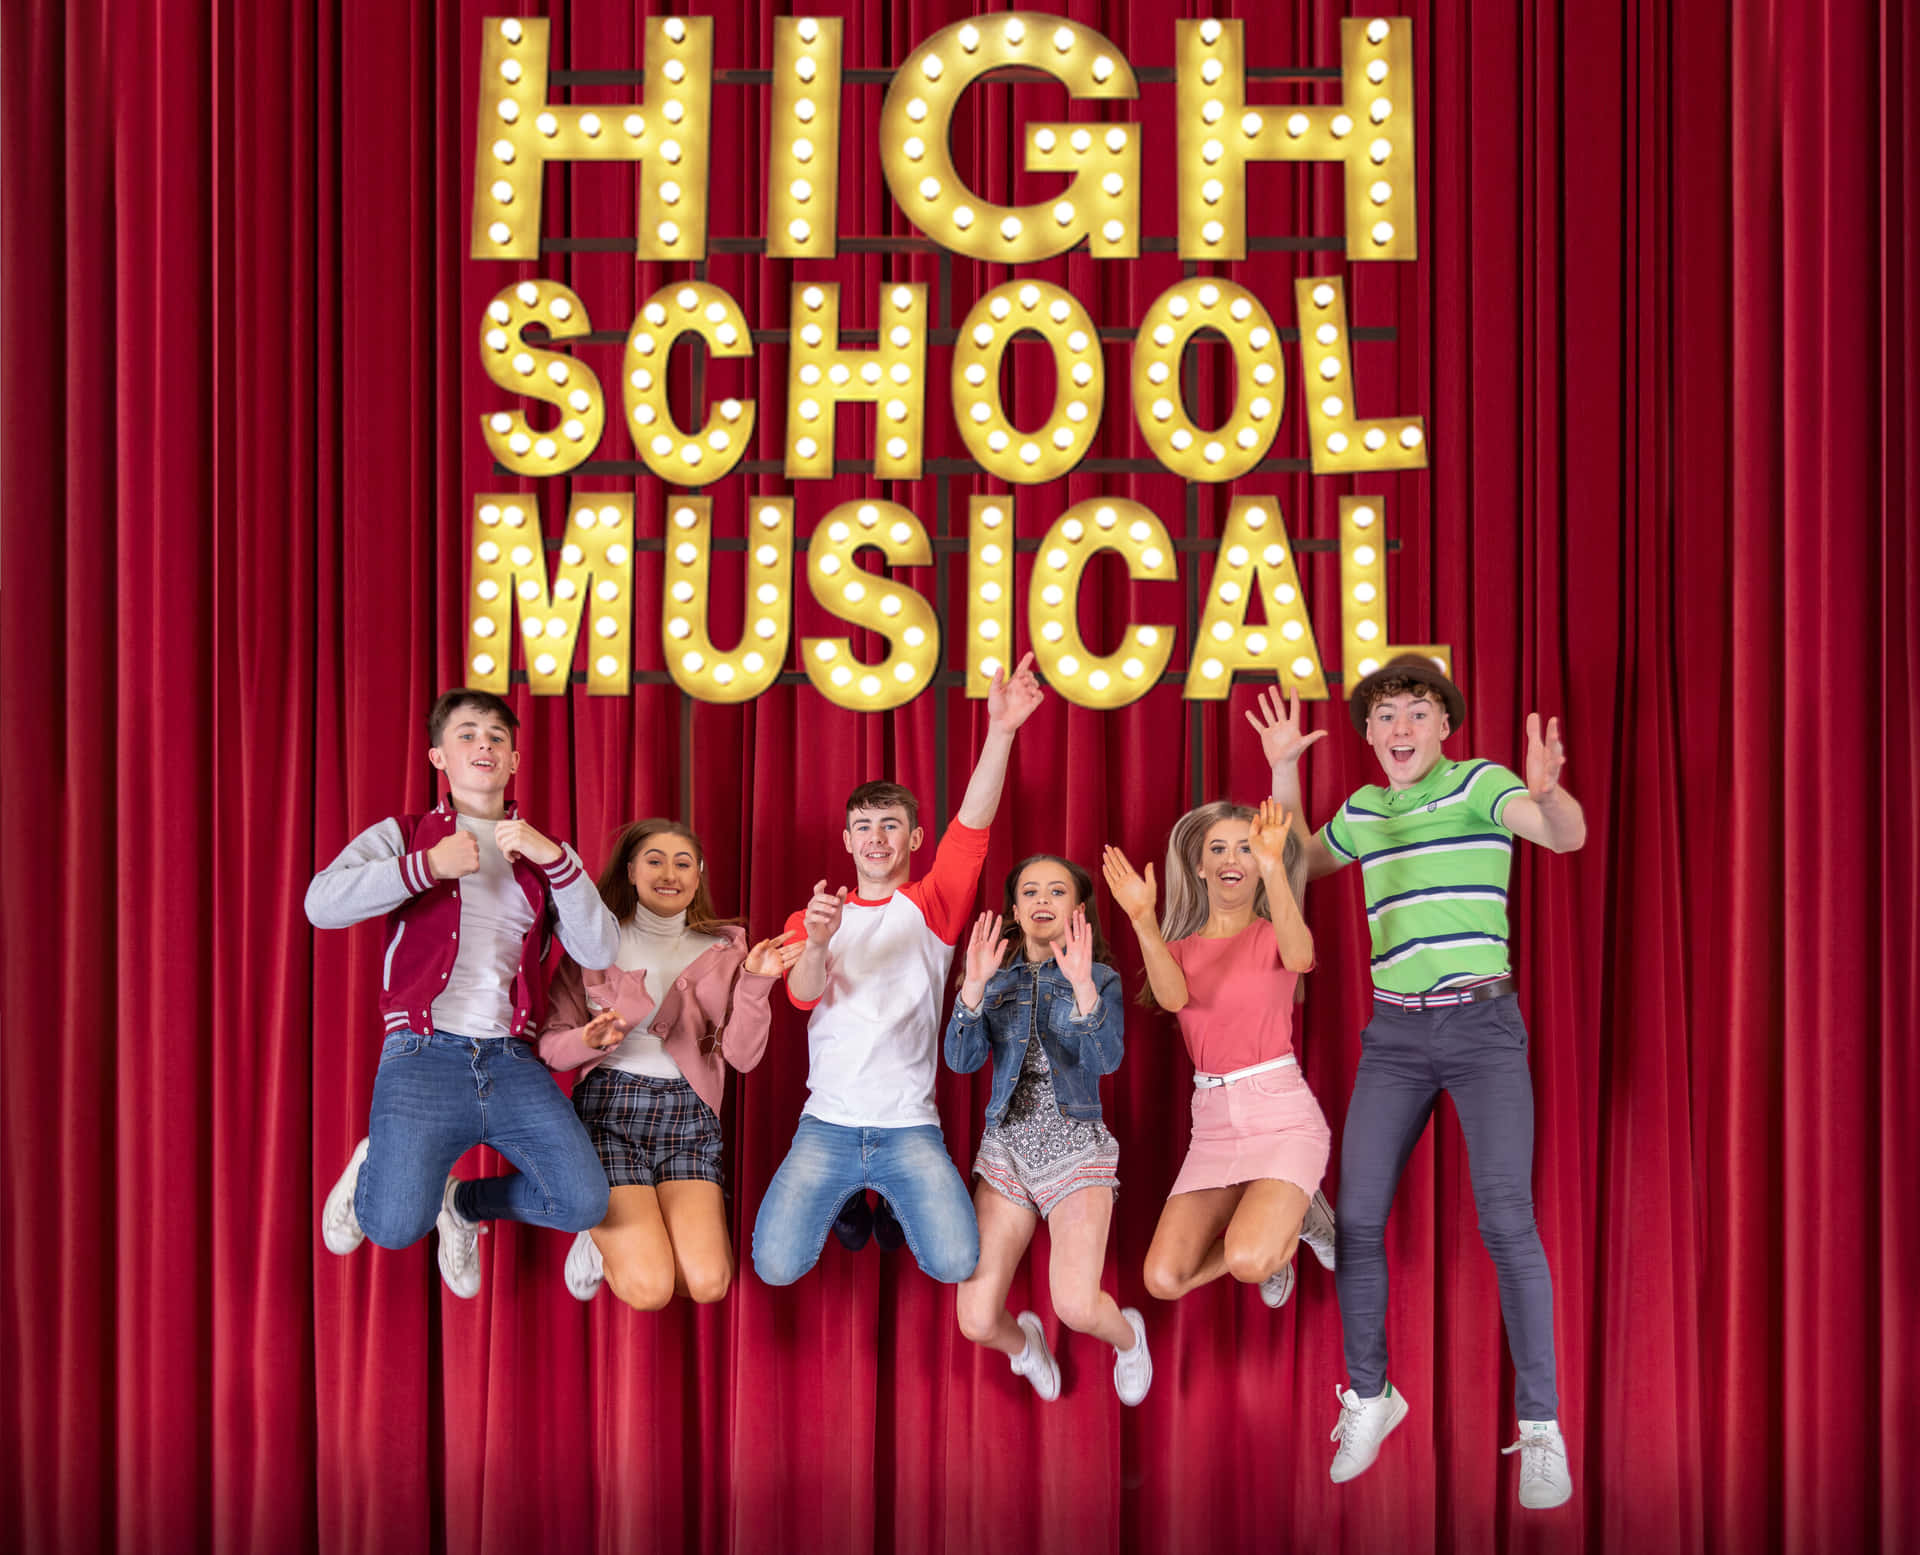 Lasestrellas De High School Musical Cantando Y Bailando En El Escenario.